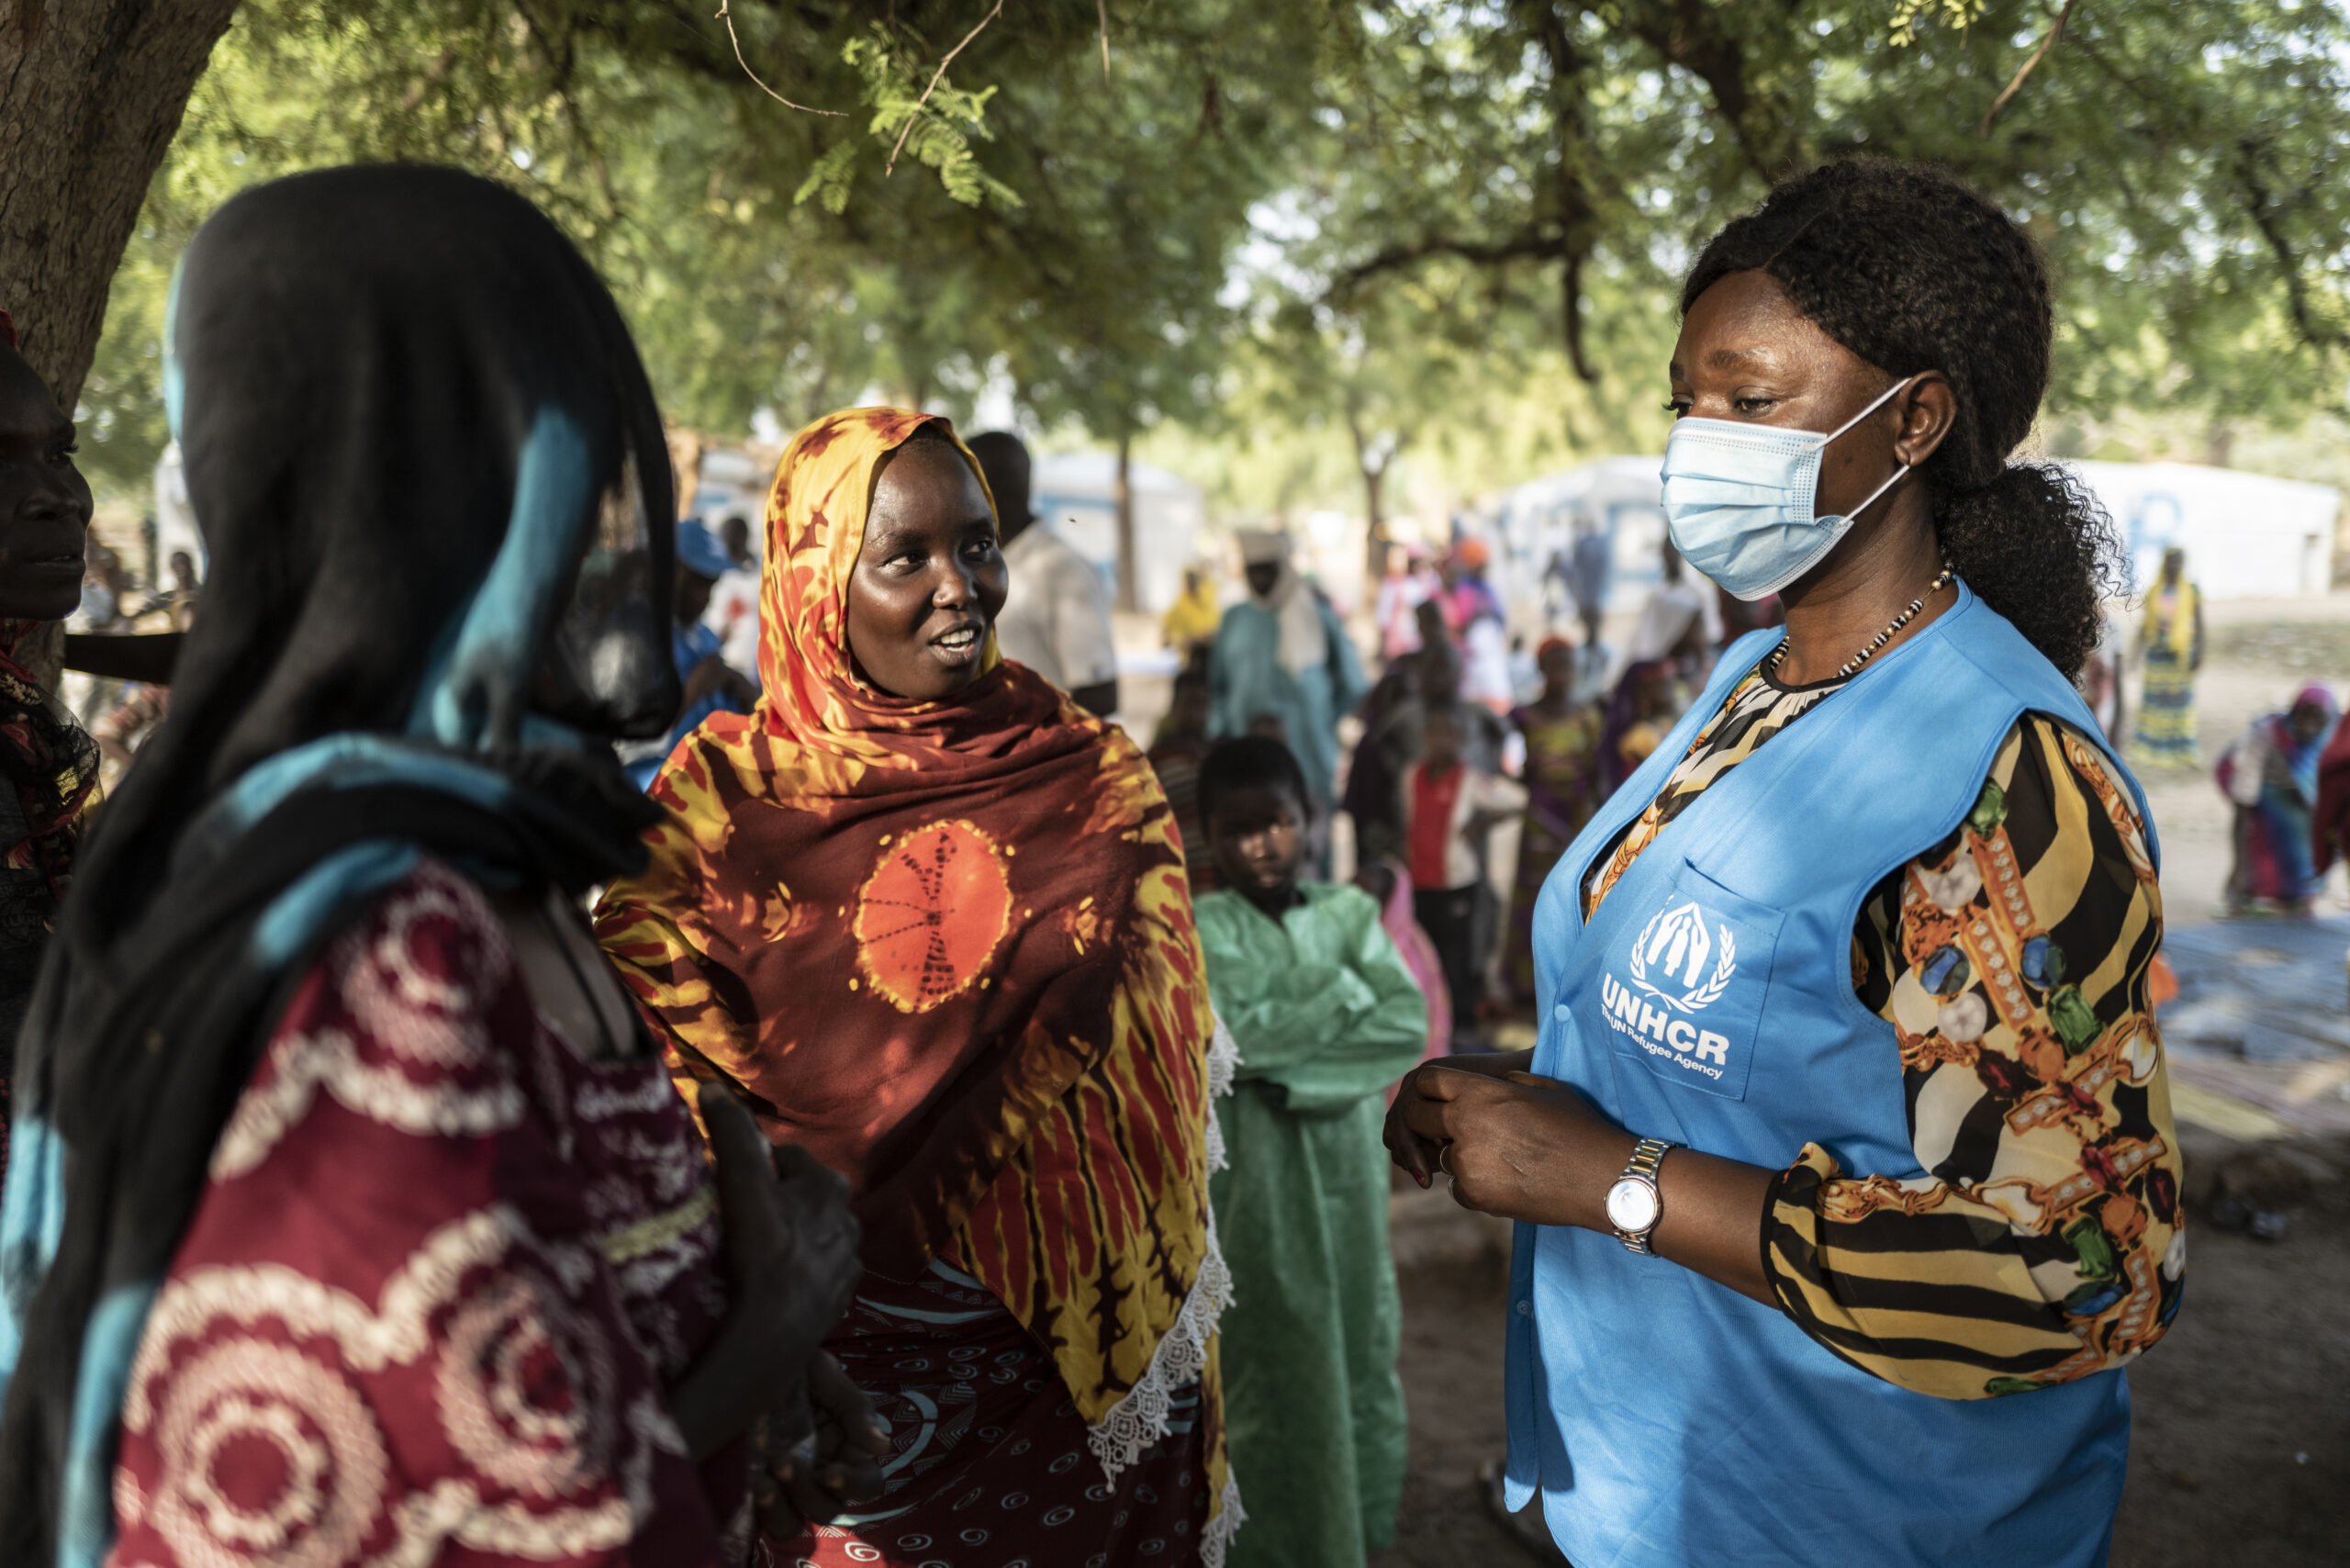 UNHCR zorgde er in 2021 voor dat zoveel mogelijk mensen ergens veilig onderdak konden vinden. Dat was onder andere het geval in kampen van de provincie Chari Baguirmi in Kameroen, waar ongeveer 11.000 mensen op de vlucht in Kameroen terechtkonden. © UNHCR/Sylvain Cherkaoui